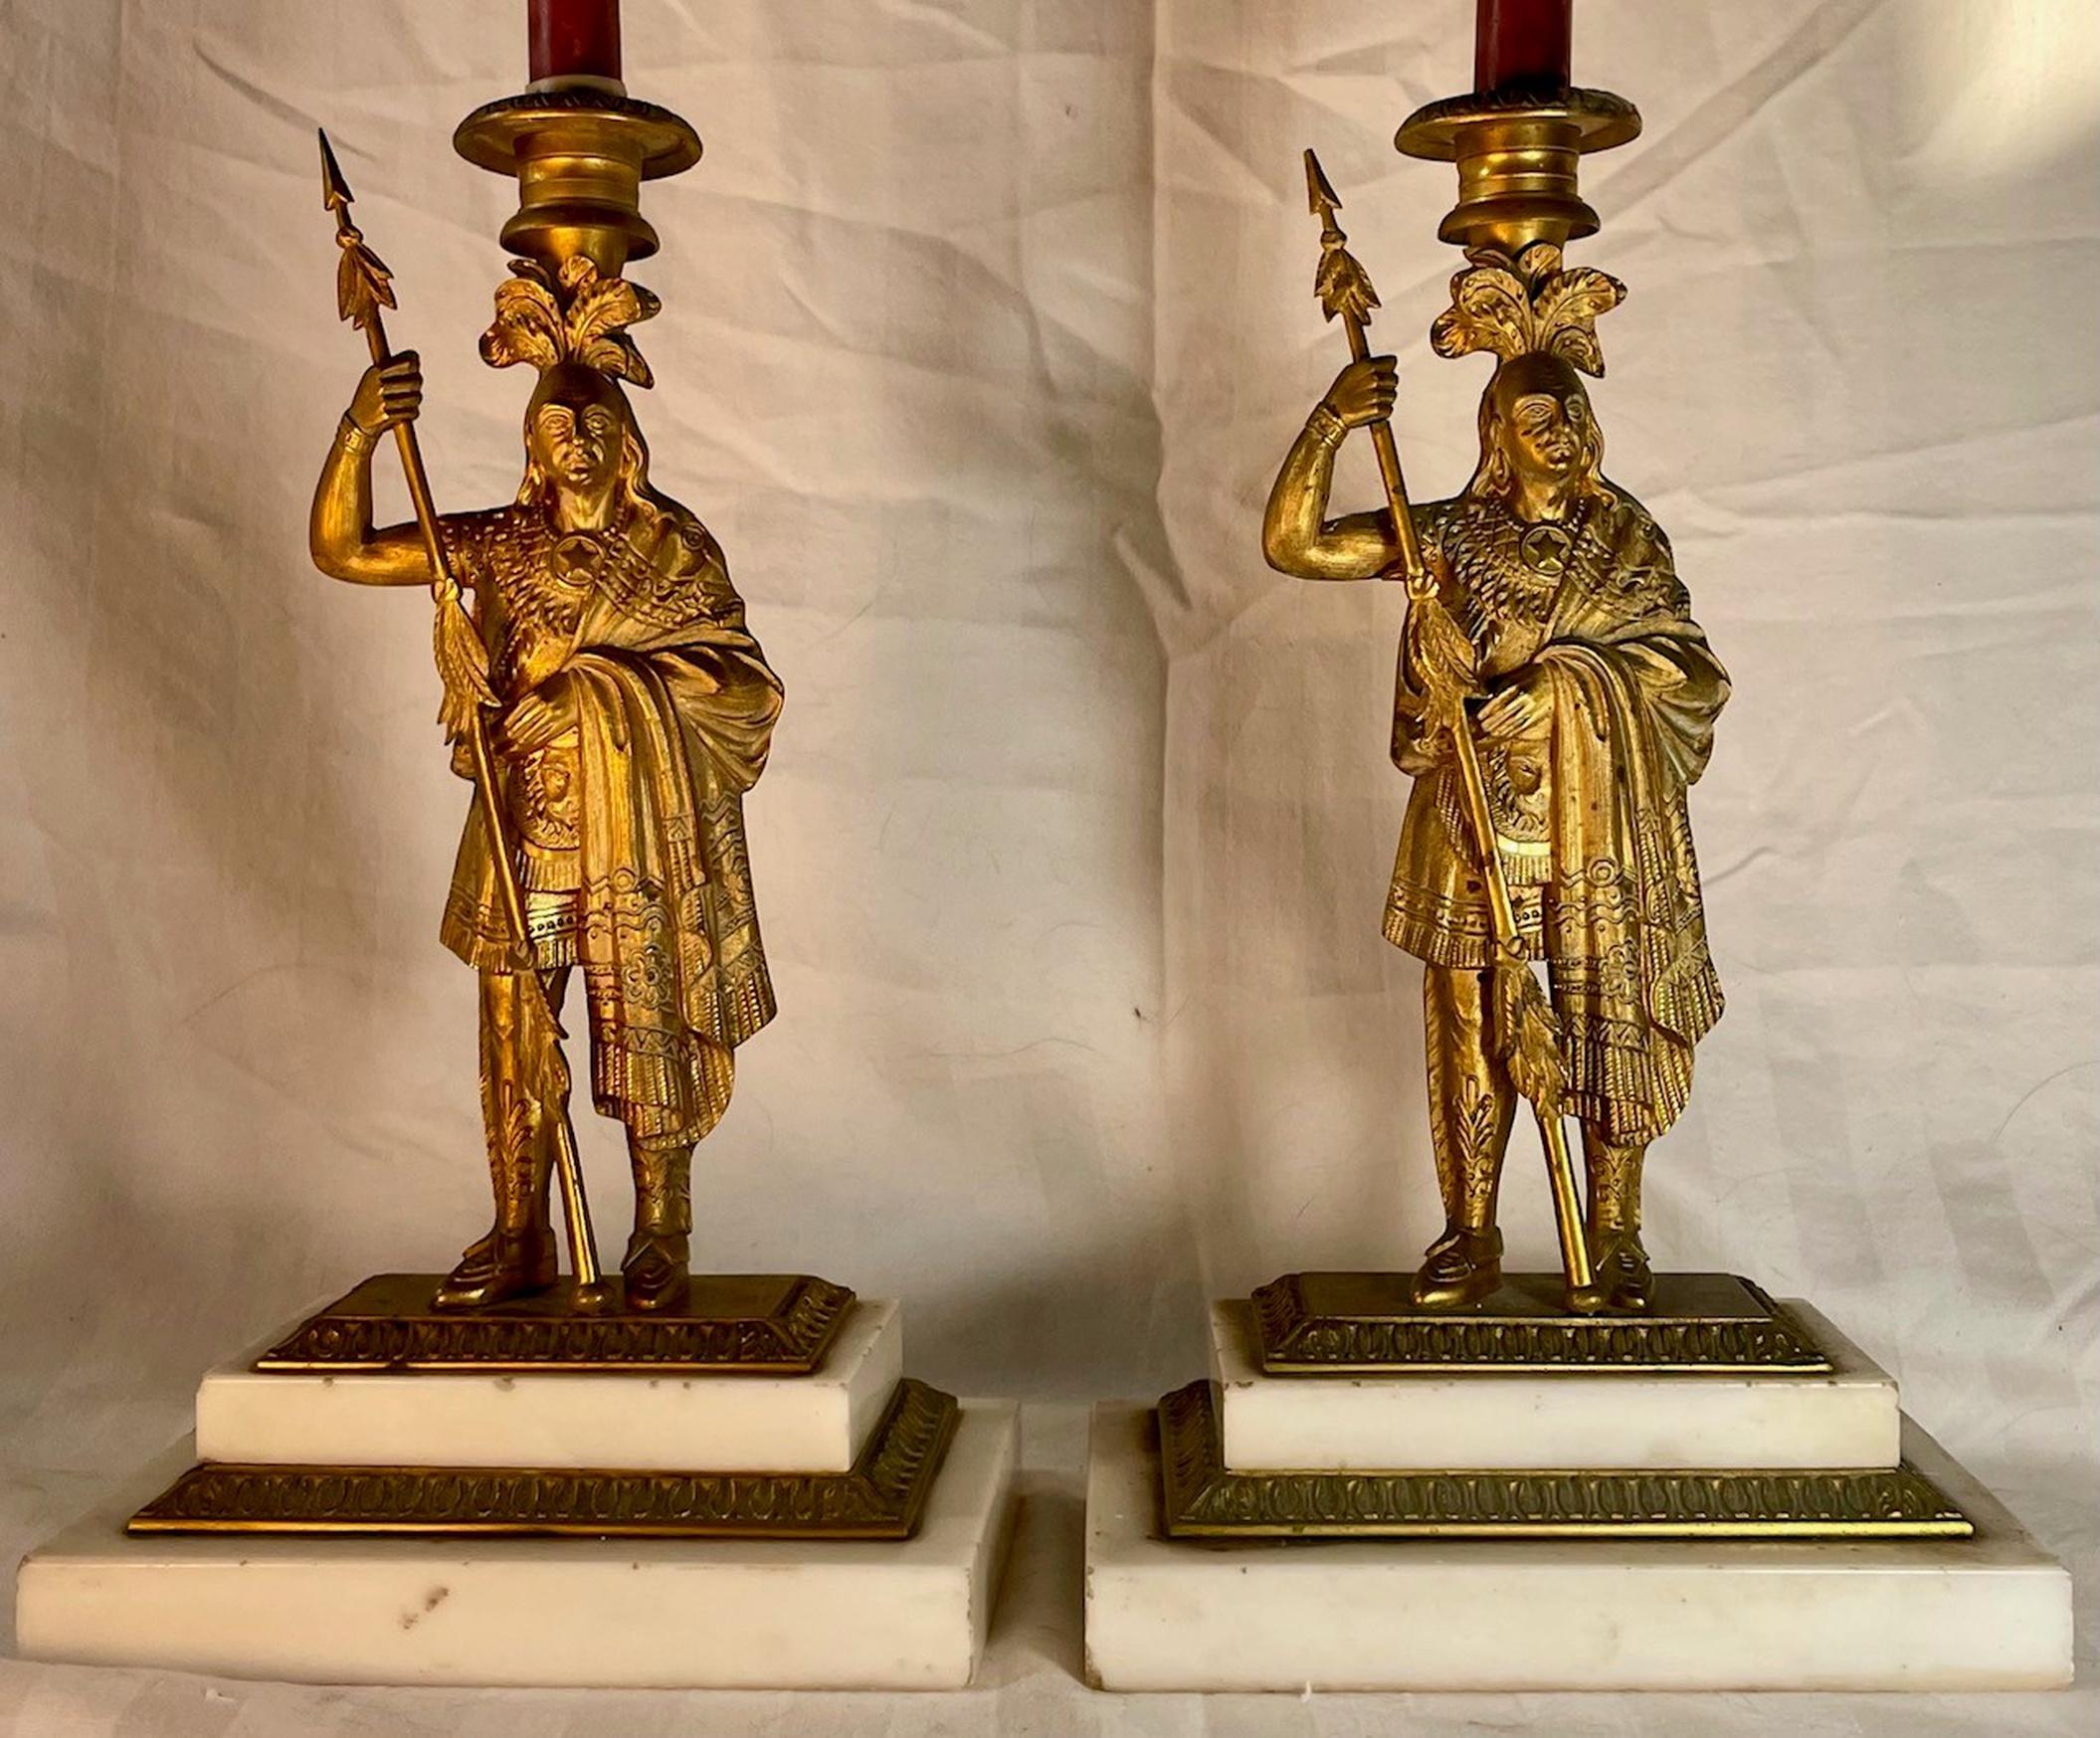 Paire de chandeliers victoriens du 19ème siècle en bronze et ormolu. 

Chandeliers d'époque victorienne en bronze et bronze doré profondément embossés. Cette paire de chandeliers anglais, parmi les plus beaux et les plus élégants, présente une